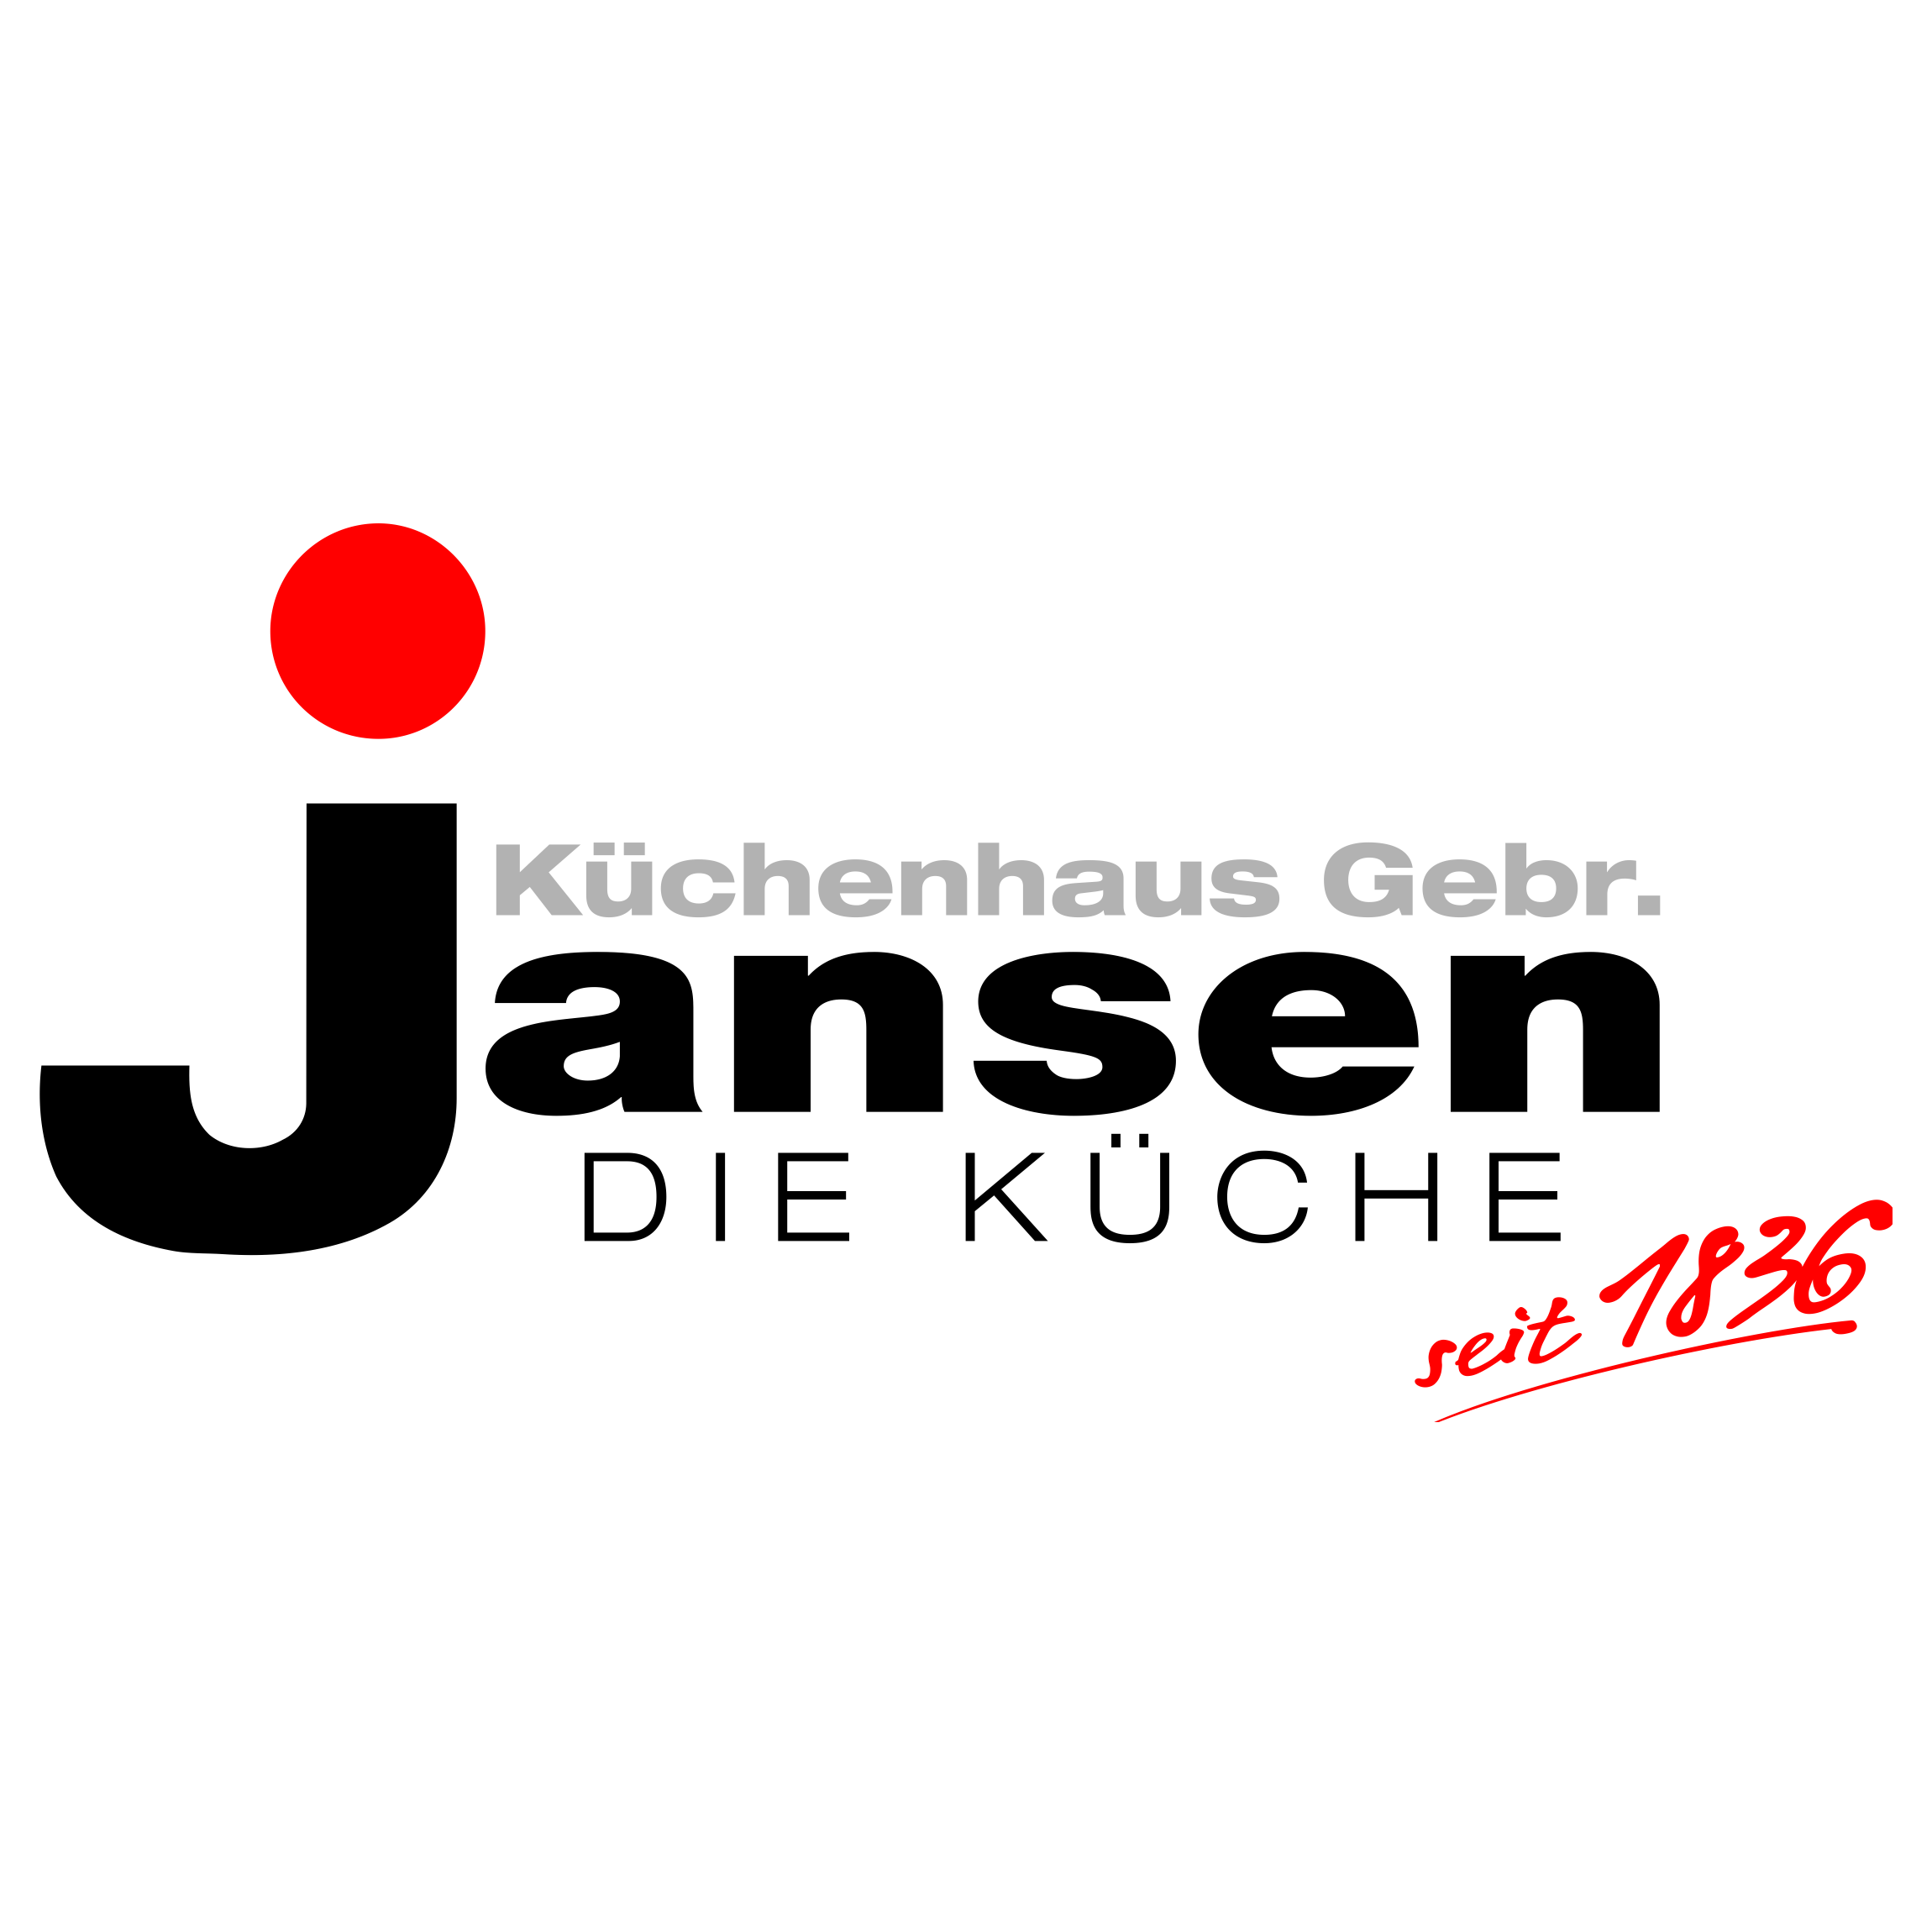 Logo Küchenhaus Gebr. Jansen